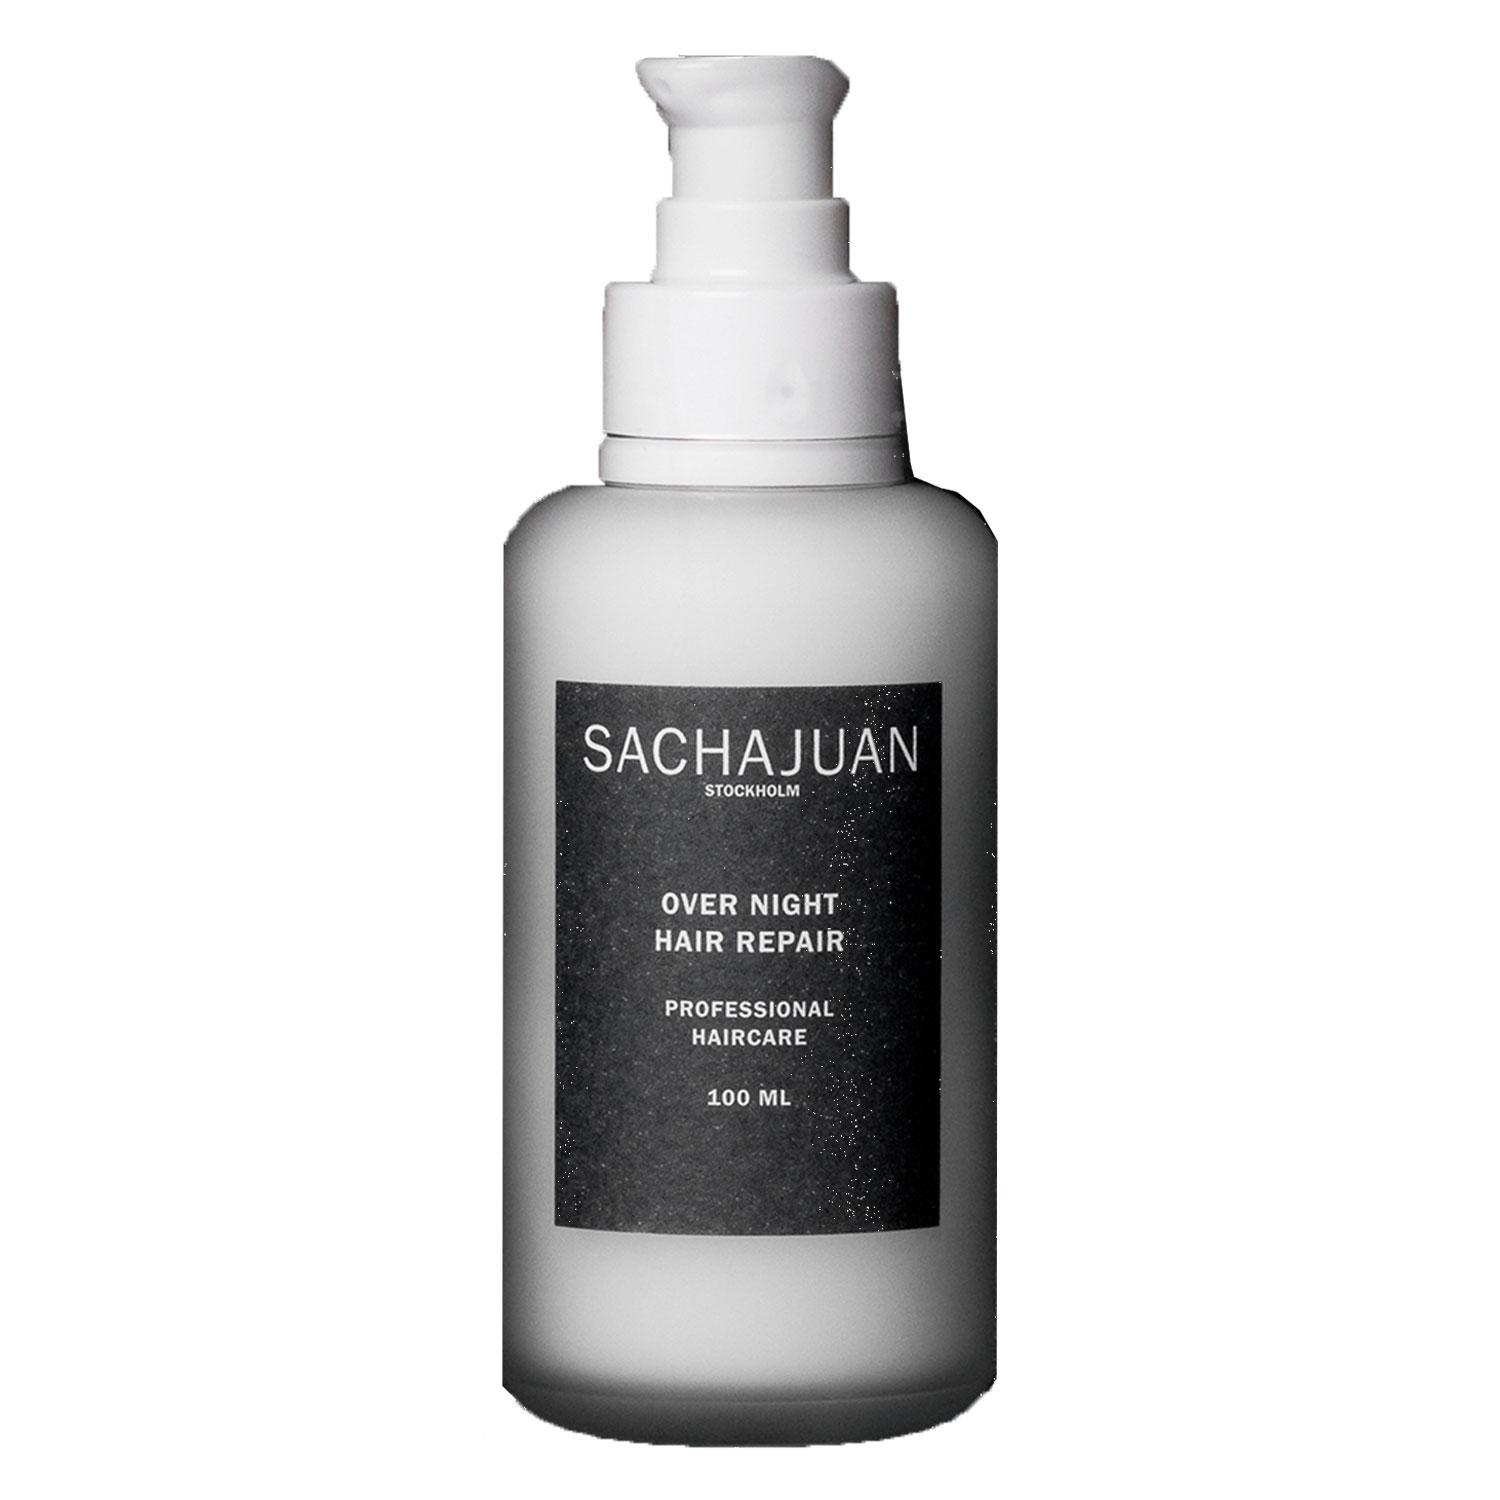 SACHAJUAN - Over Night Hair Repair